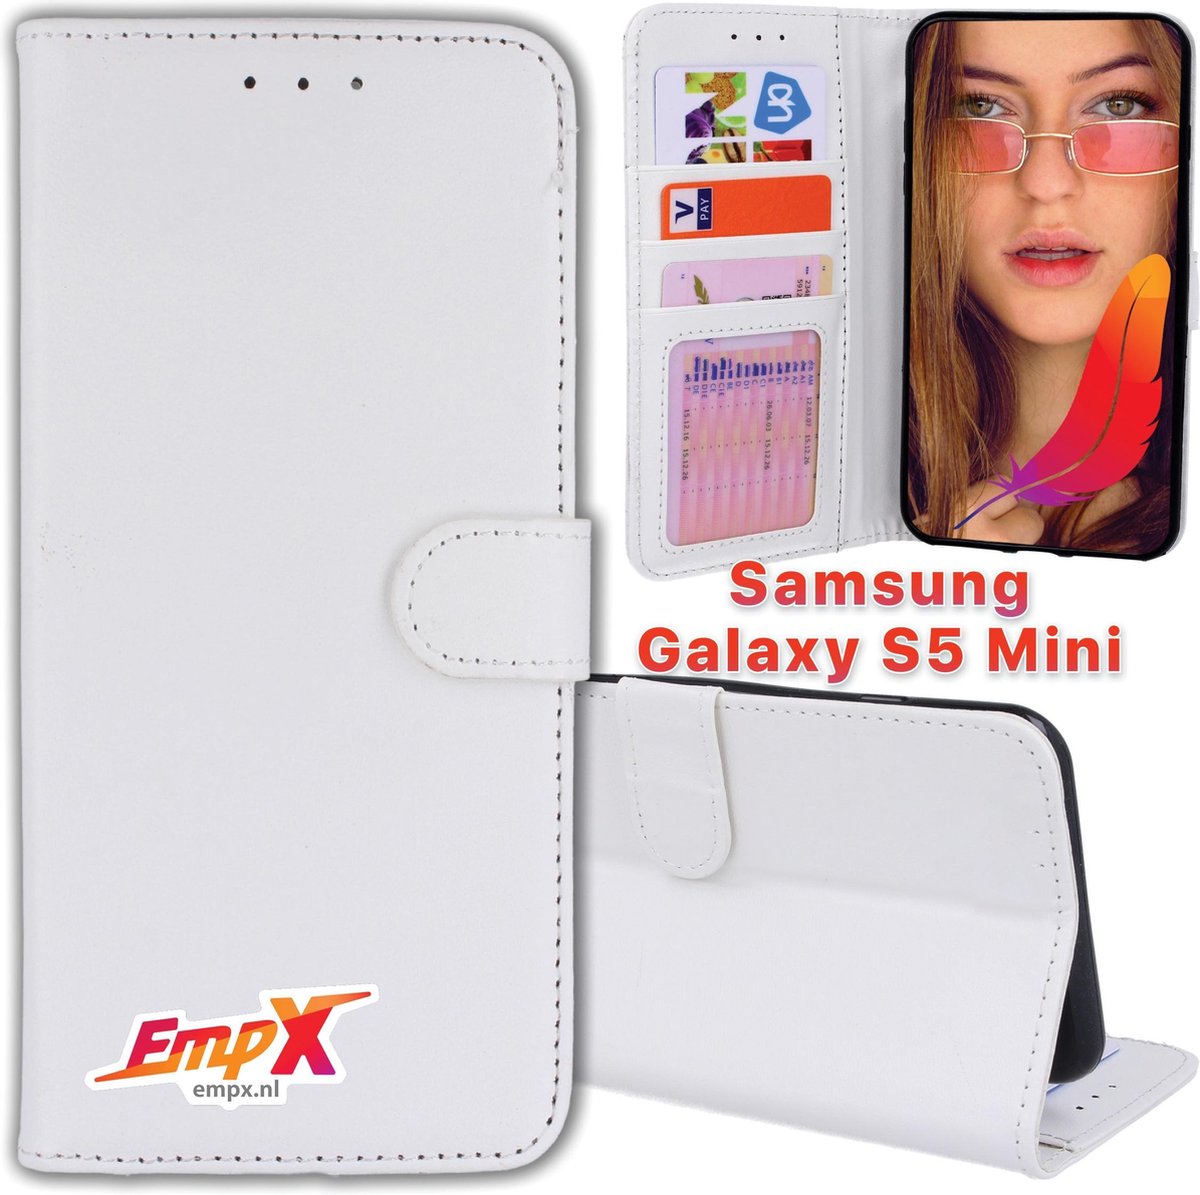 EmpX.nl Couverture de livre Wit Galaxy S5 Mini | Étui portefeuille  portefeuille pour... | bol.com